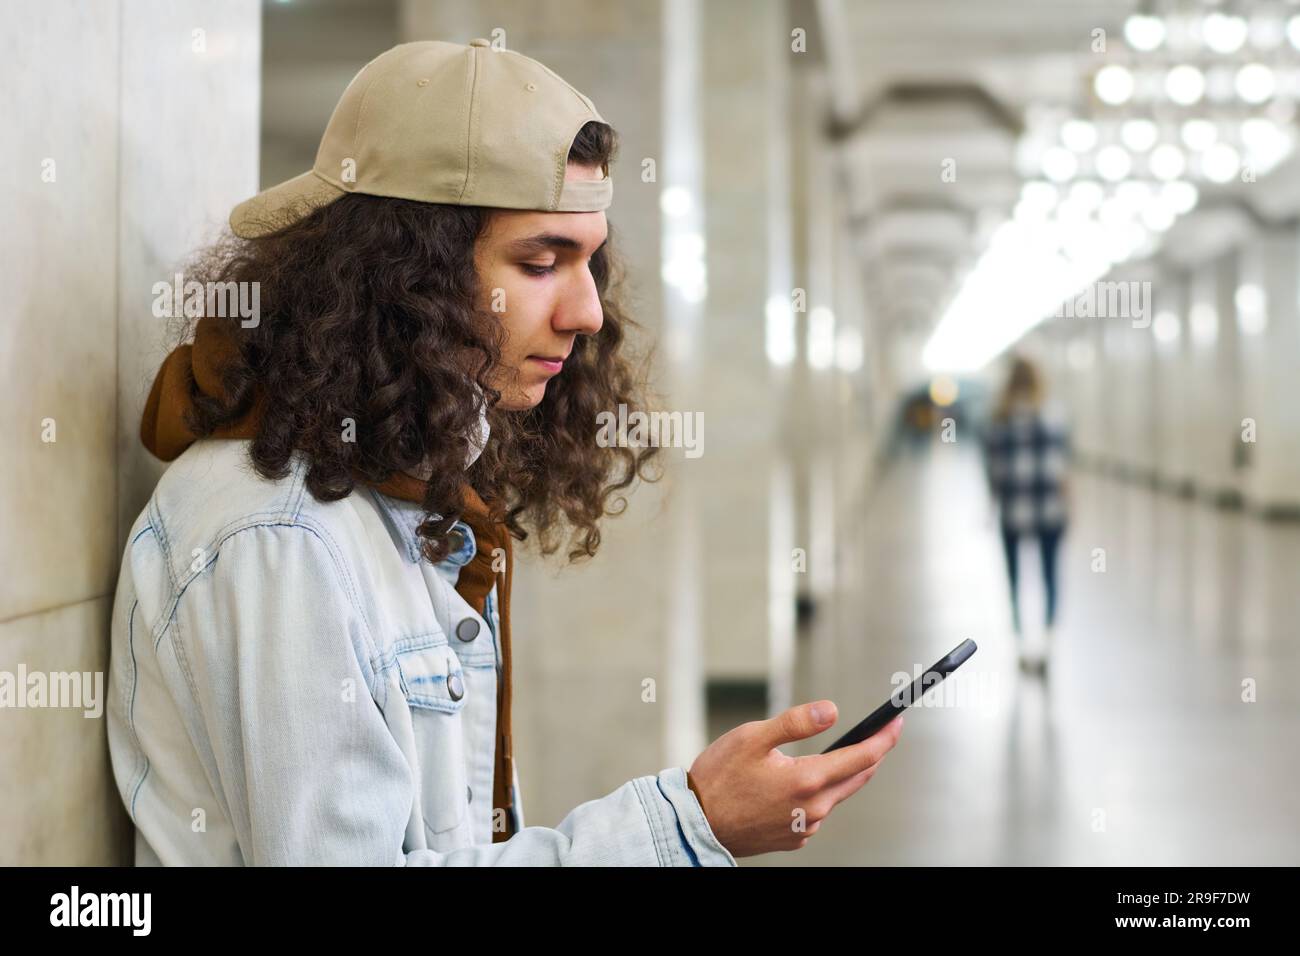 Ein Teenager mit langen, dicken Locken, der SMS schreibt oder Videos auf einem Smartphone ansieht, während er auf die U-Bahn in der U-Bahn-Station wartet Stockfoto